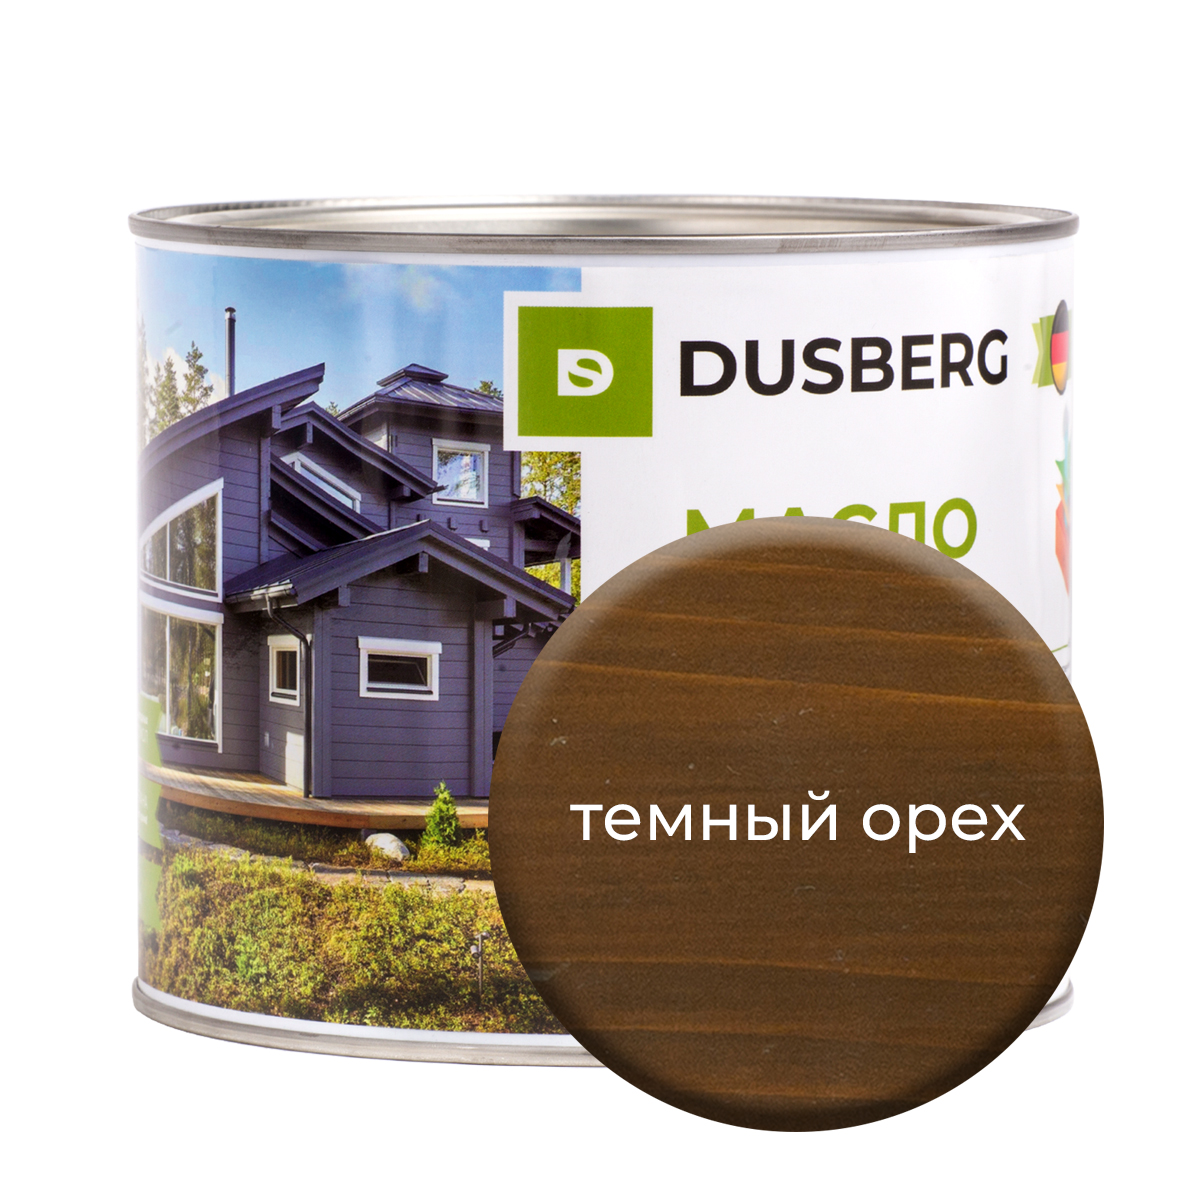 Масло Dusberg для дерева на бесцветной основе, 2 л Темный орех масло dusberg для дерева на бесцветной основе 2 л орех